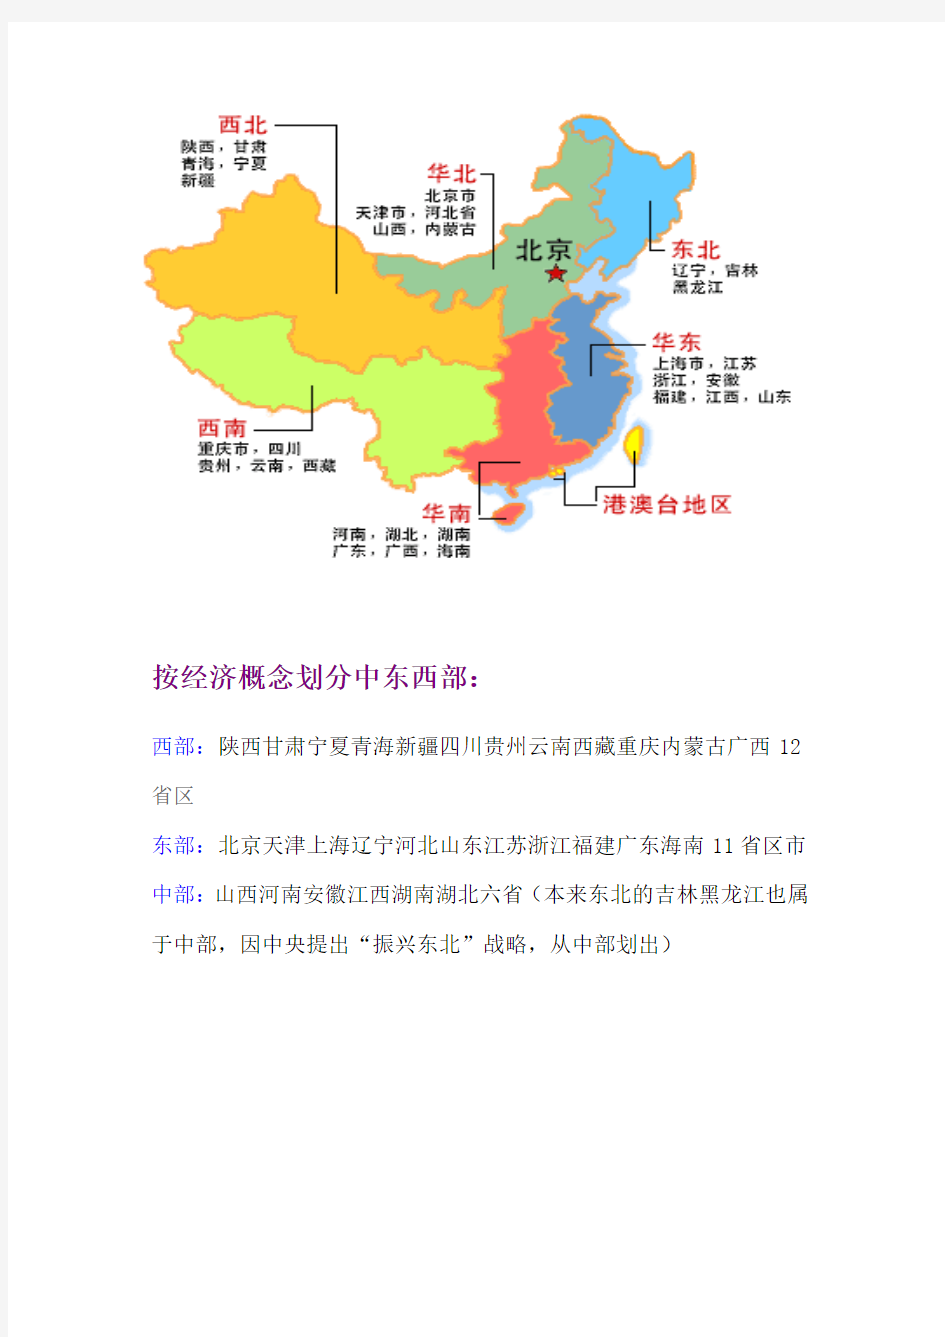 中国地理区域划分(精品)